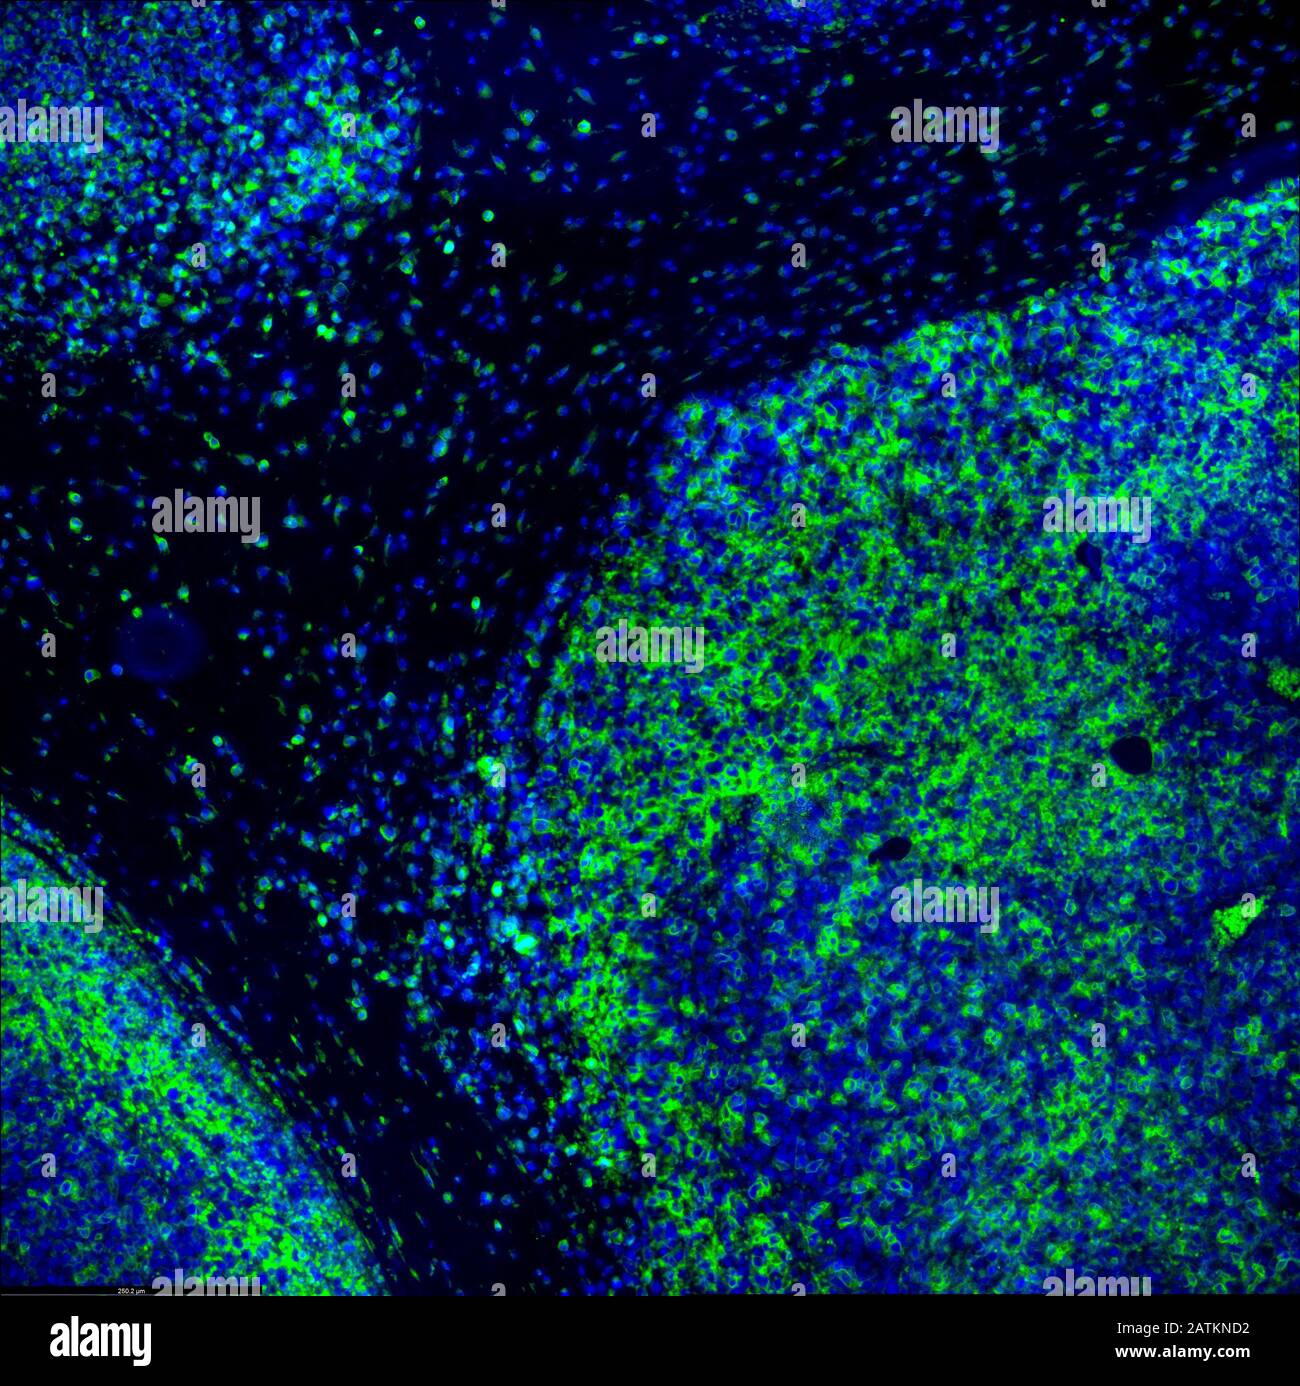 Inmunofluorescencia tumoral imagen de IHC del tratamiento de inmunoterapia. Células tumorales en azul atacadas por linfocitos T del sistema inmunitario en verde Foto de stock